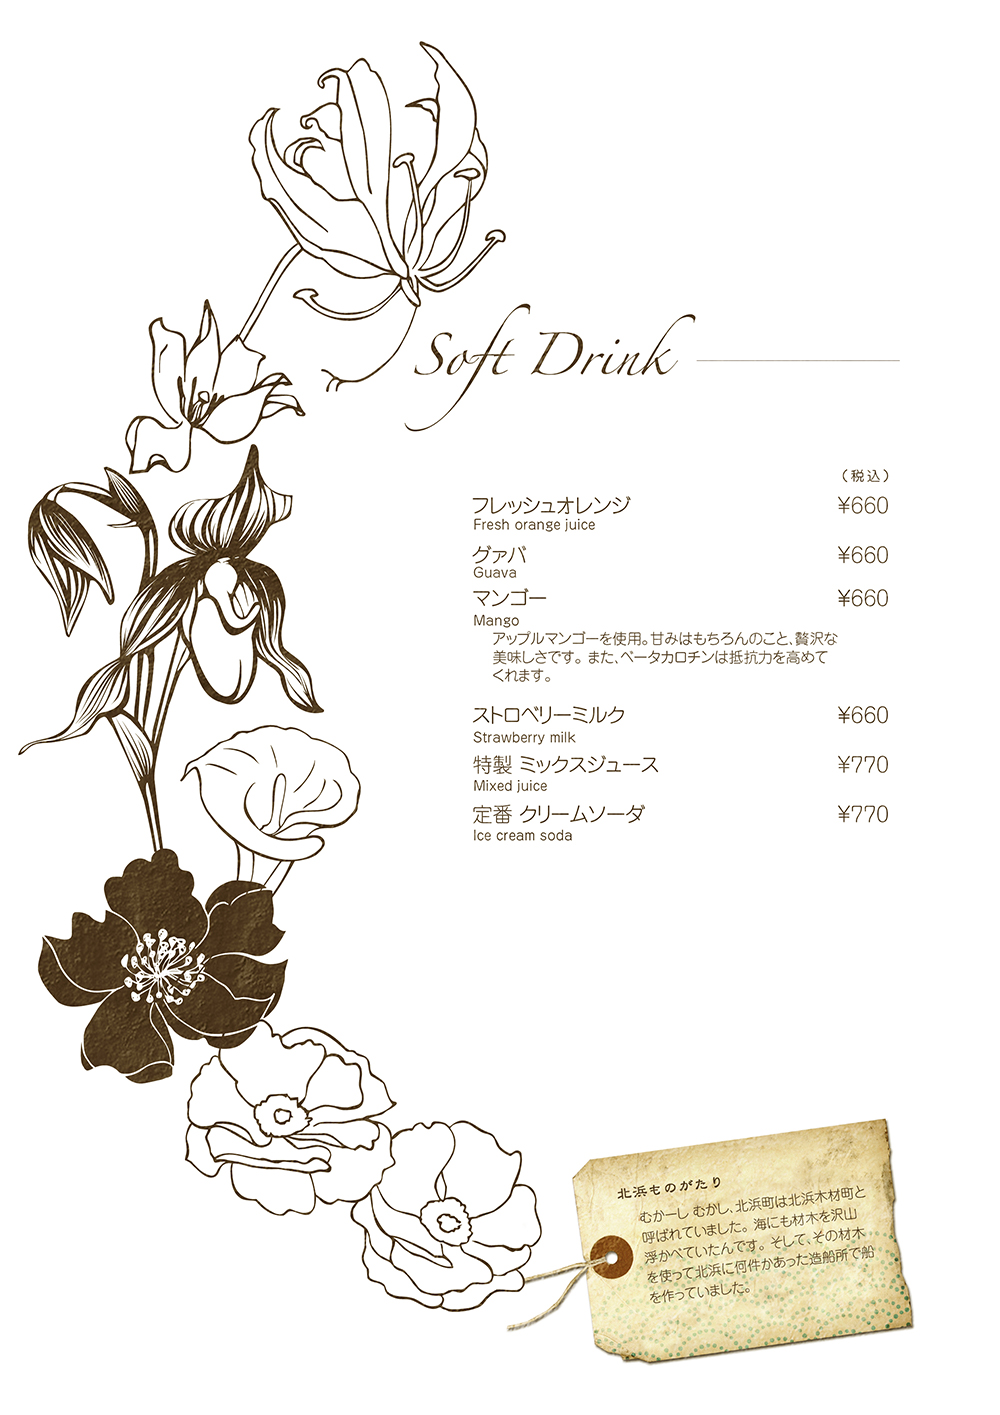 hazuki drink menu